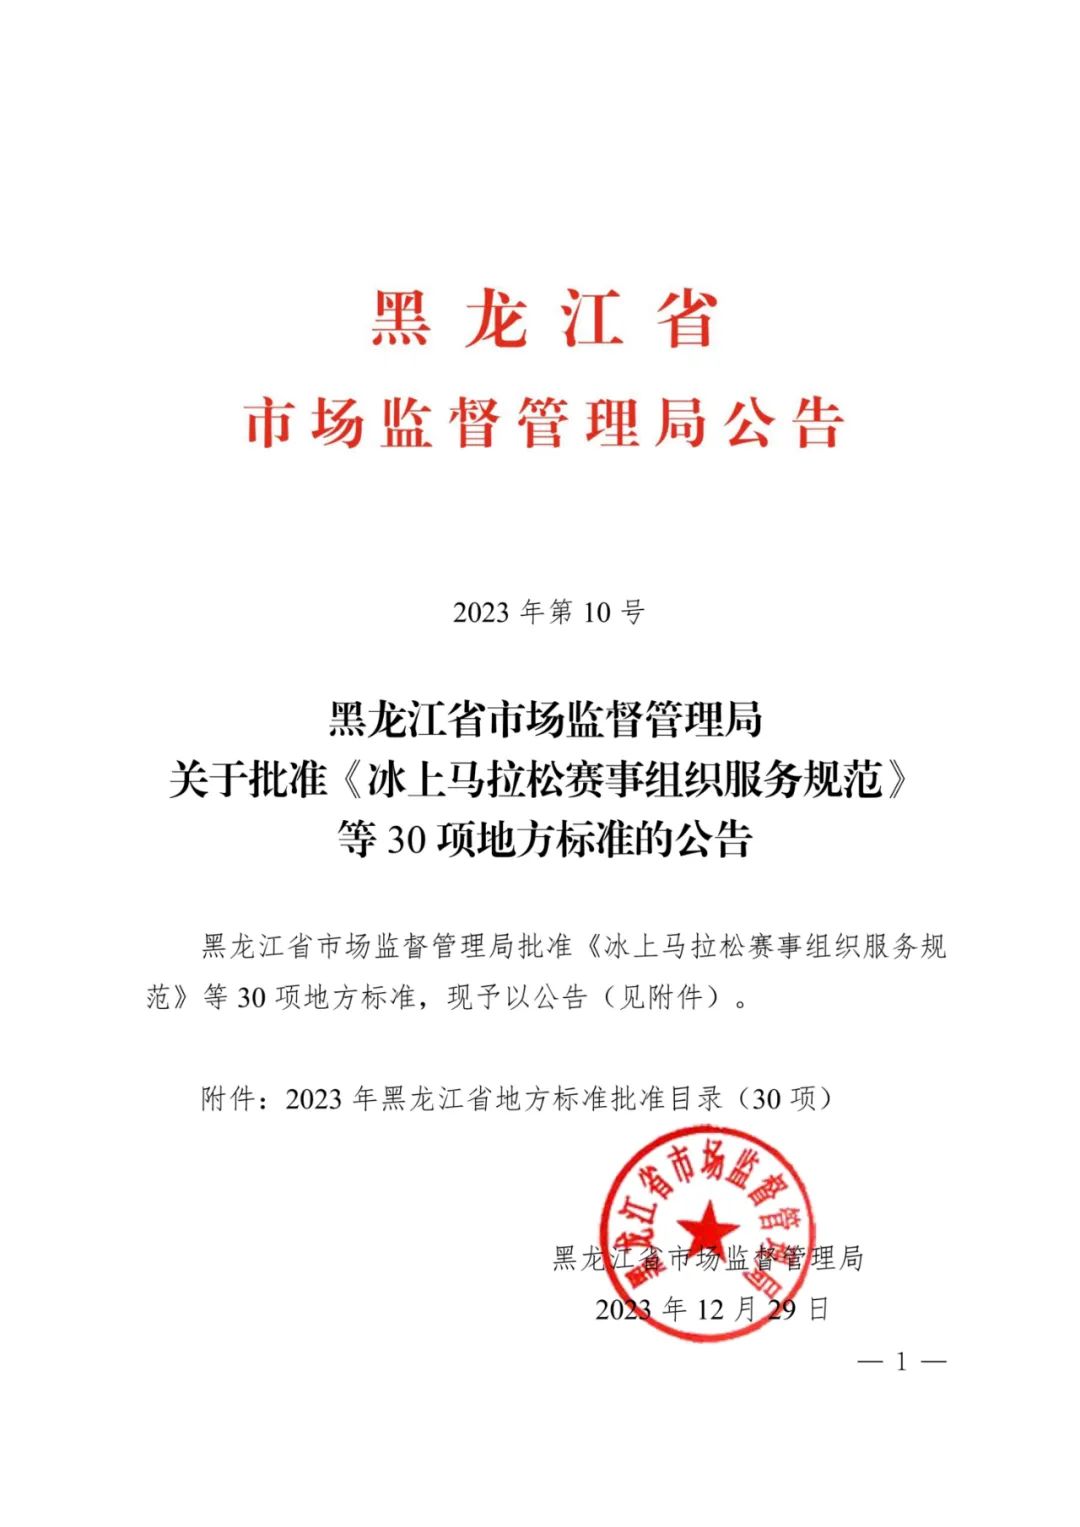 黑龙江省民政职业技术学校主持起草的《殡仪服务规范》获批首个殡葬领域黑龙江省地方标准